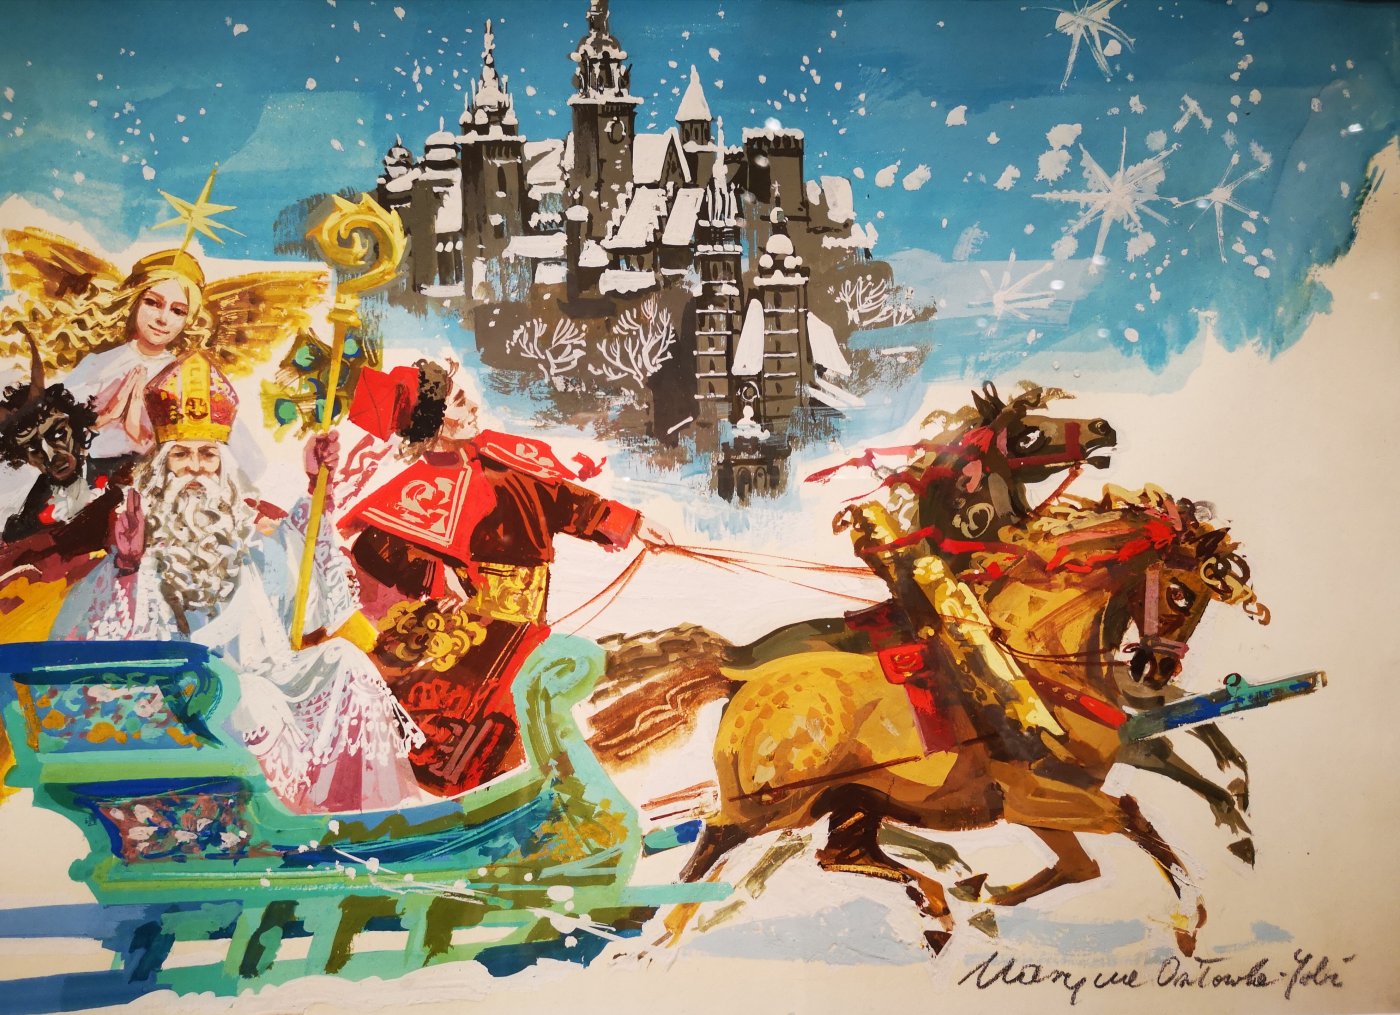 i
na pocztówce Królowa Śniegu jedzie na saniach